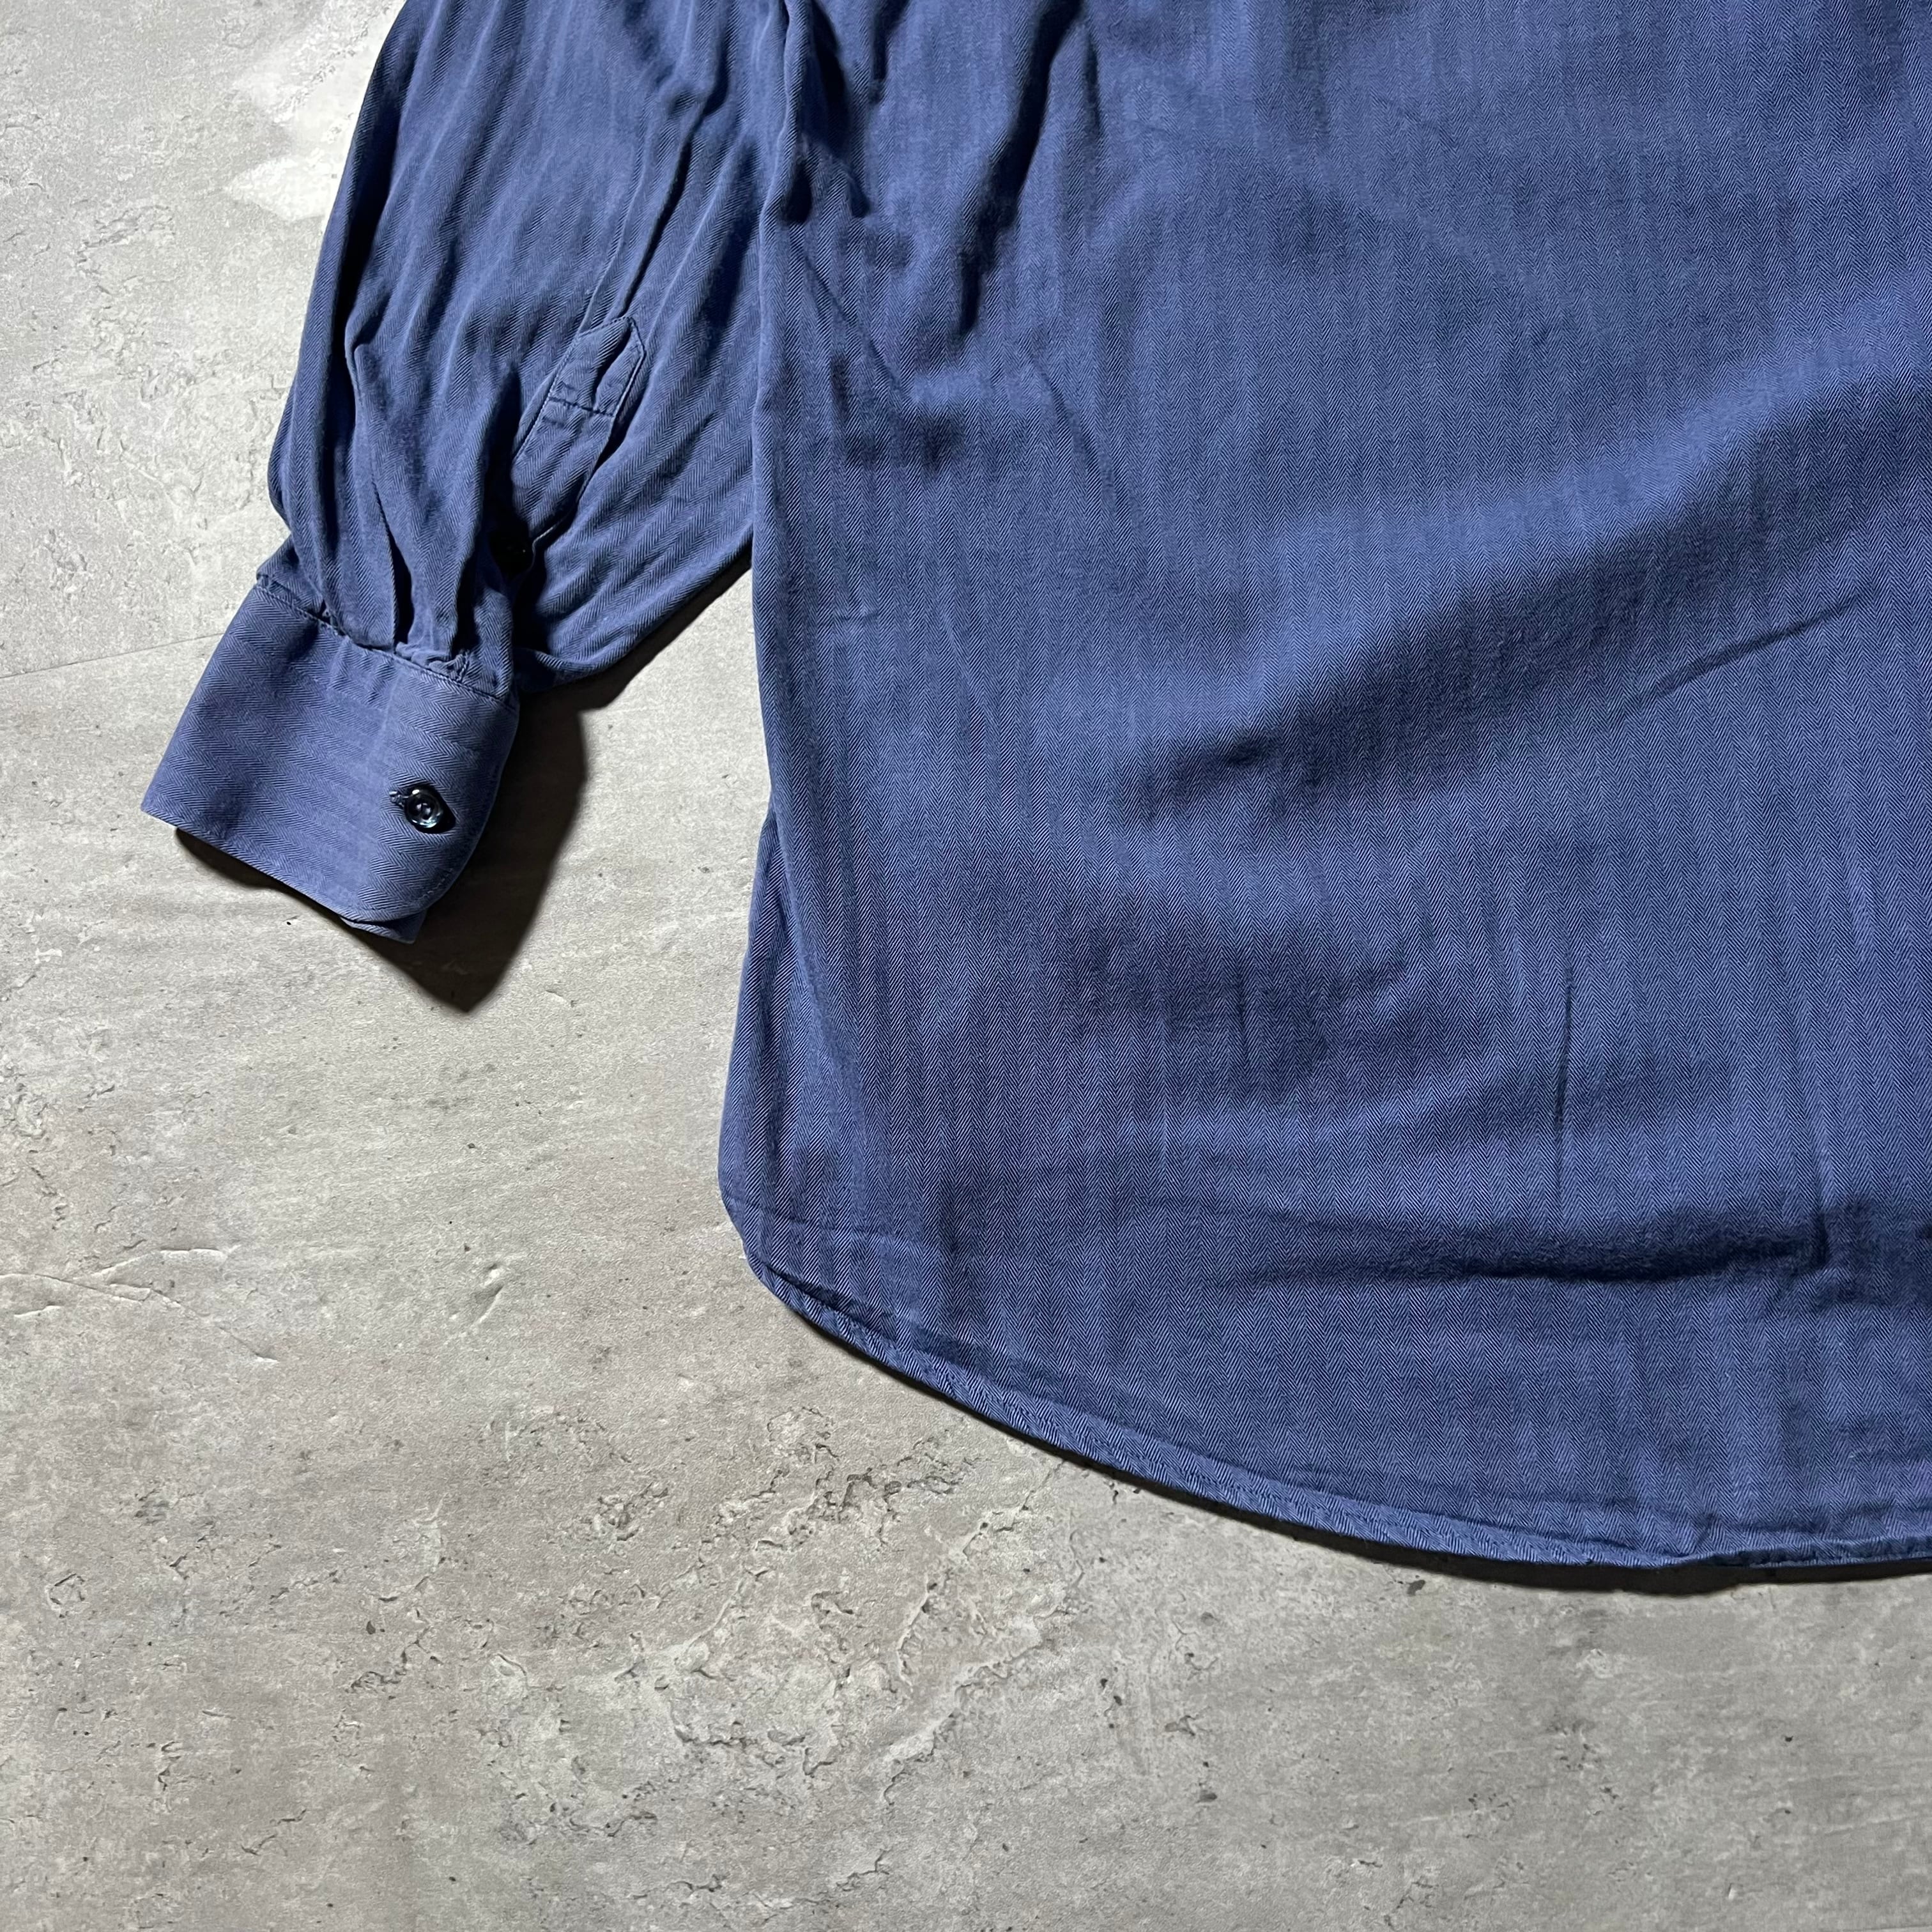 90s “GIANFRANCO FERRE” navy herringbone pattern shirt ジャン